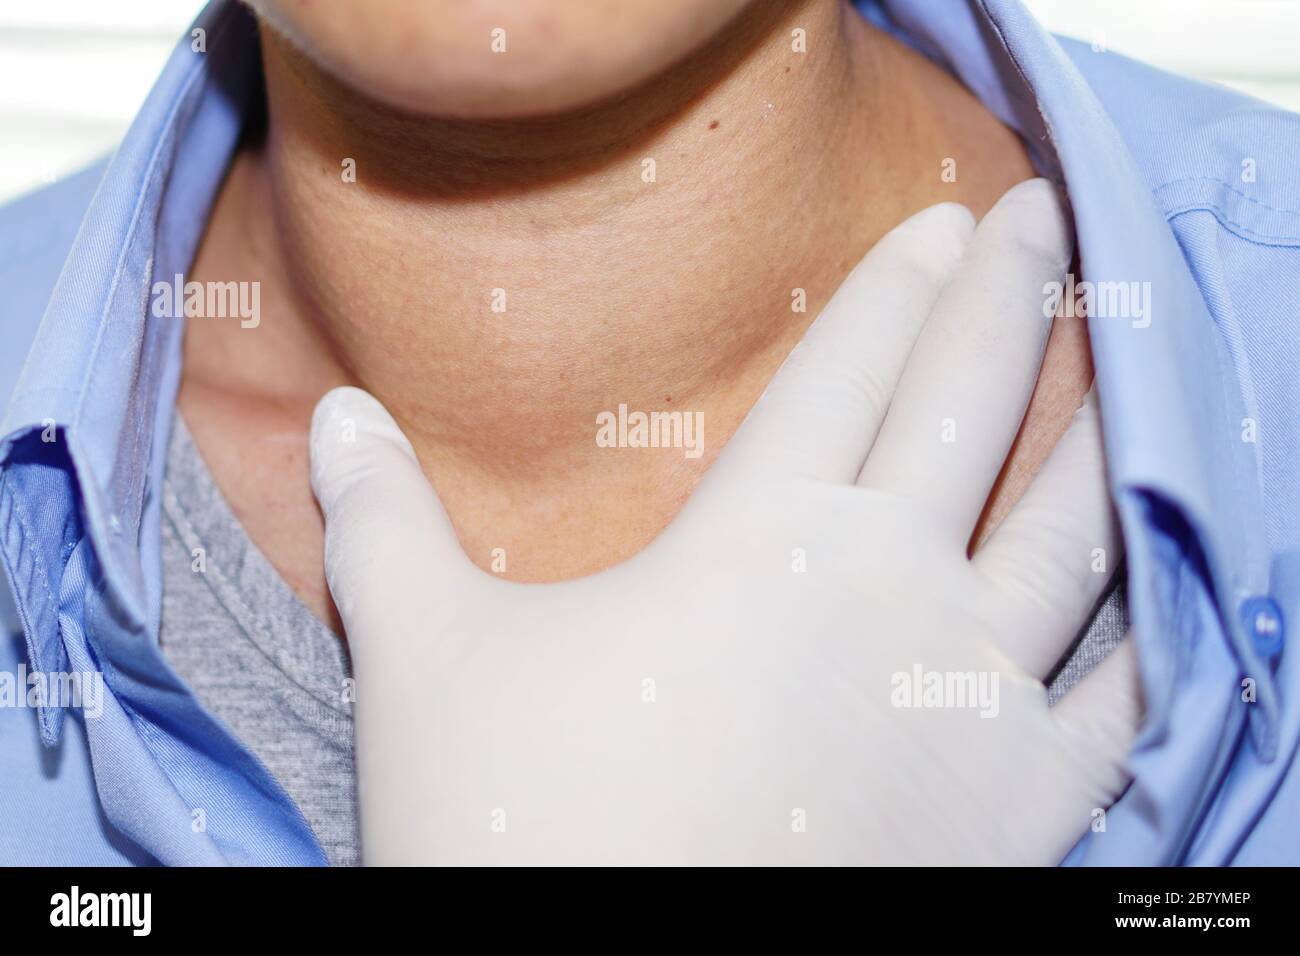 Asiatische Dame Frau Patienten abnorme Vergrößerung der Schilddrüse Hyperthyreose (Überfunktion der Schilddrüse) an der Kehle: Gesunde starke Medizinische anhand von quantitativen Simulatio Stockfoto